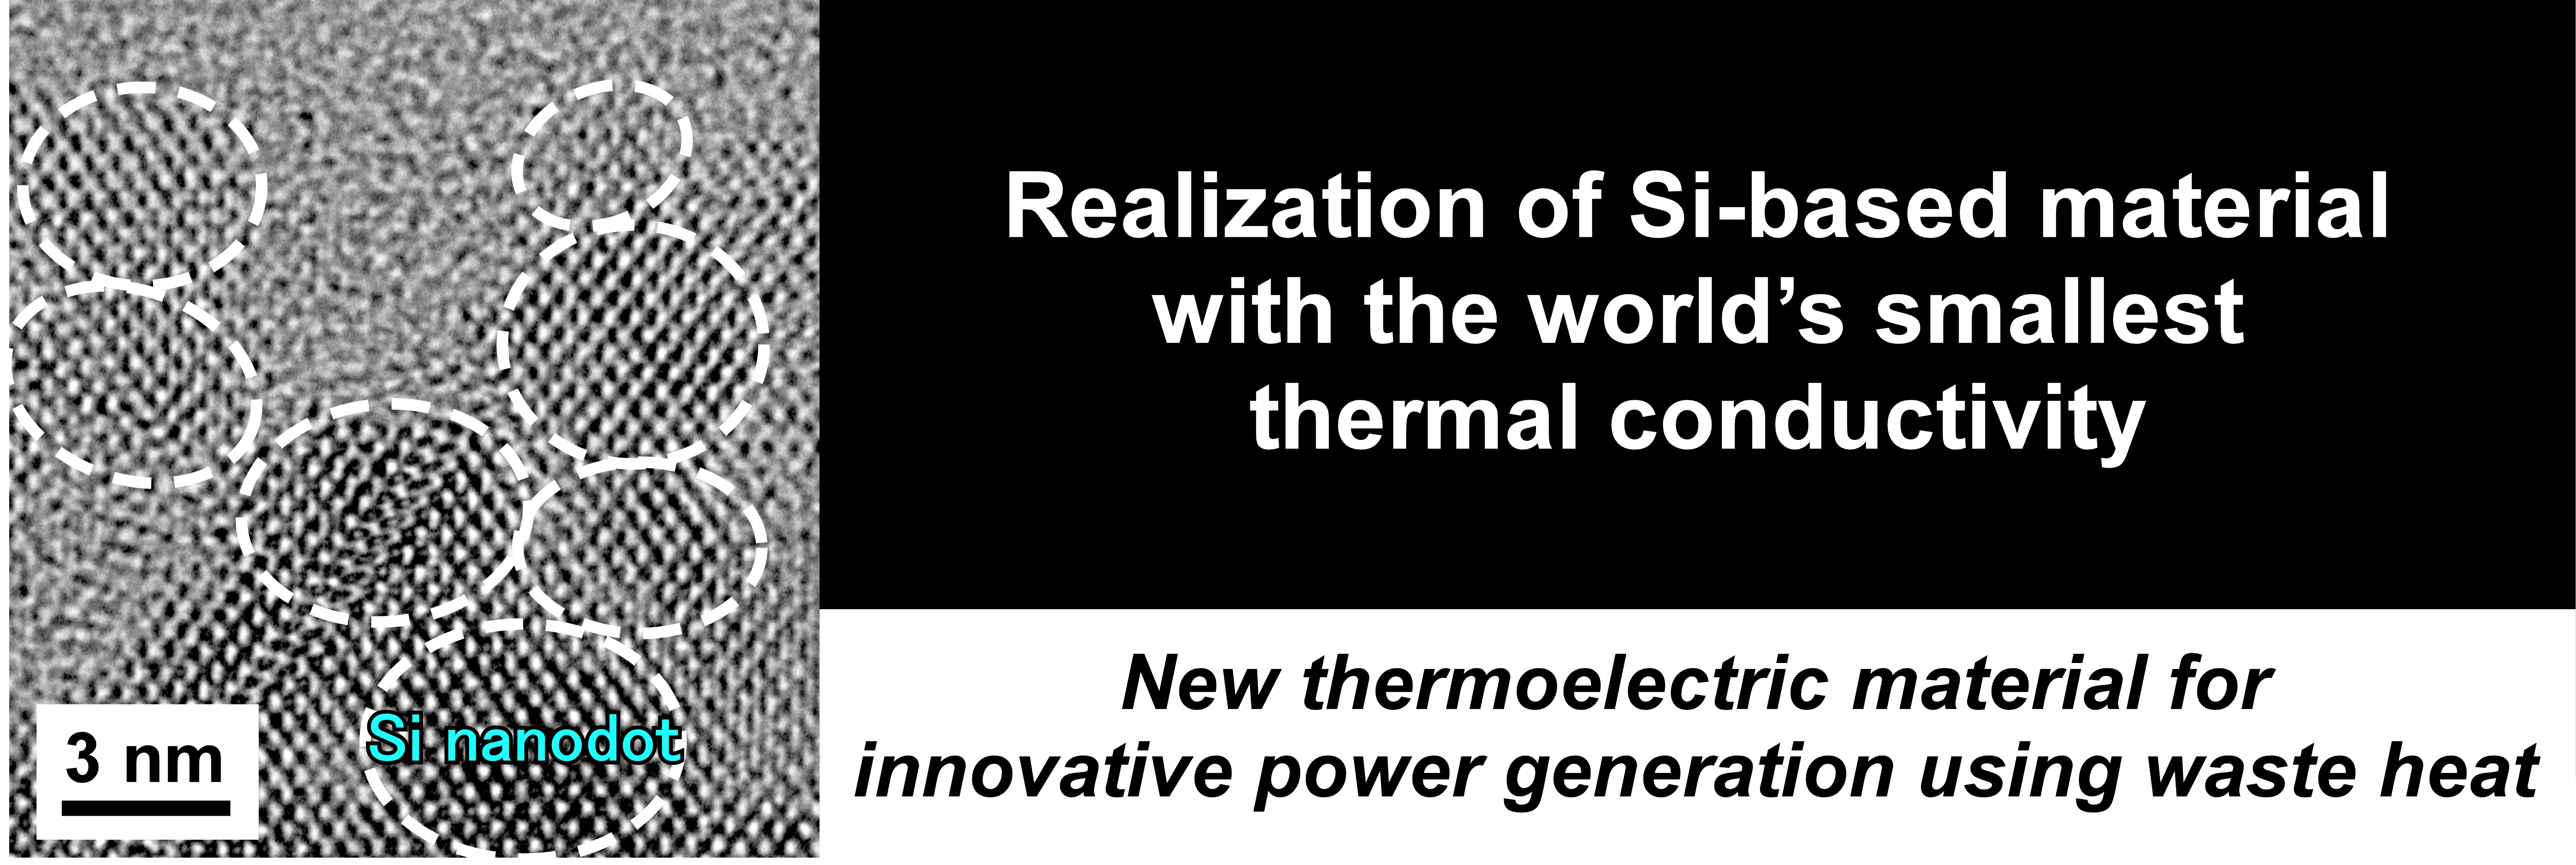 世界最小熱伝導率の 結晶シリコン材料の実現